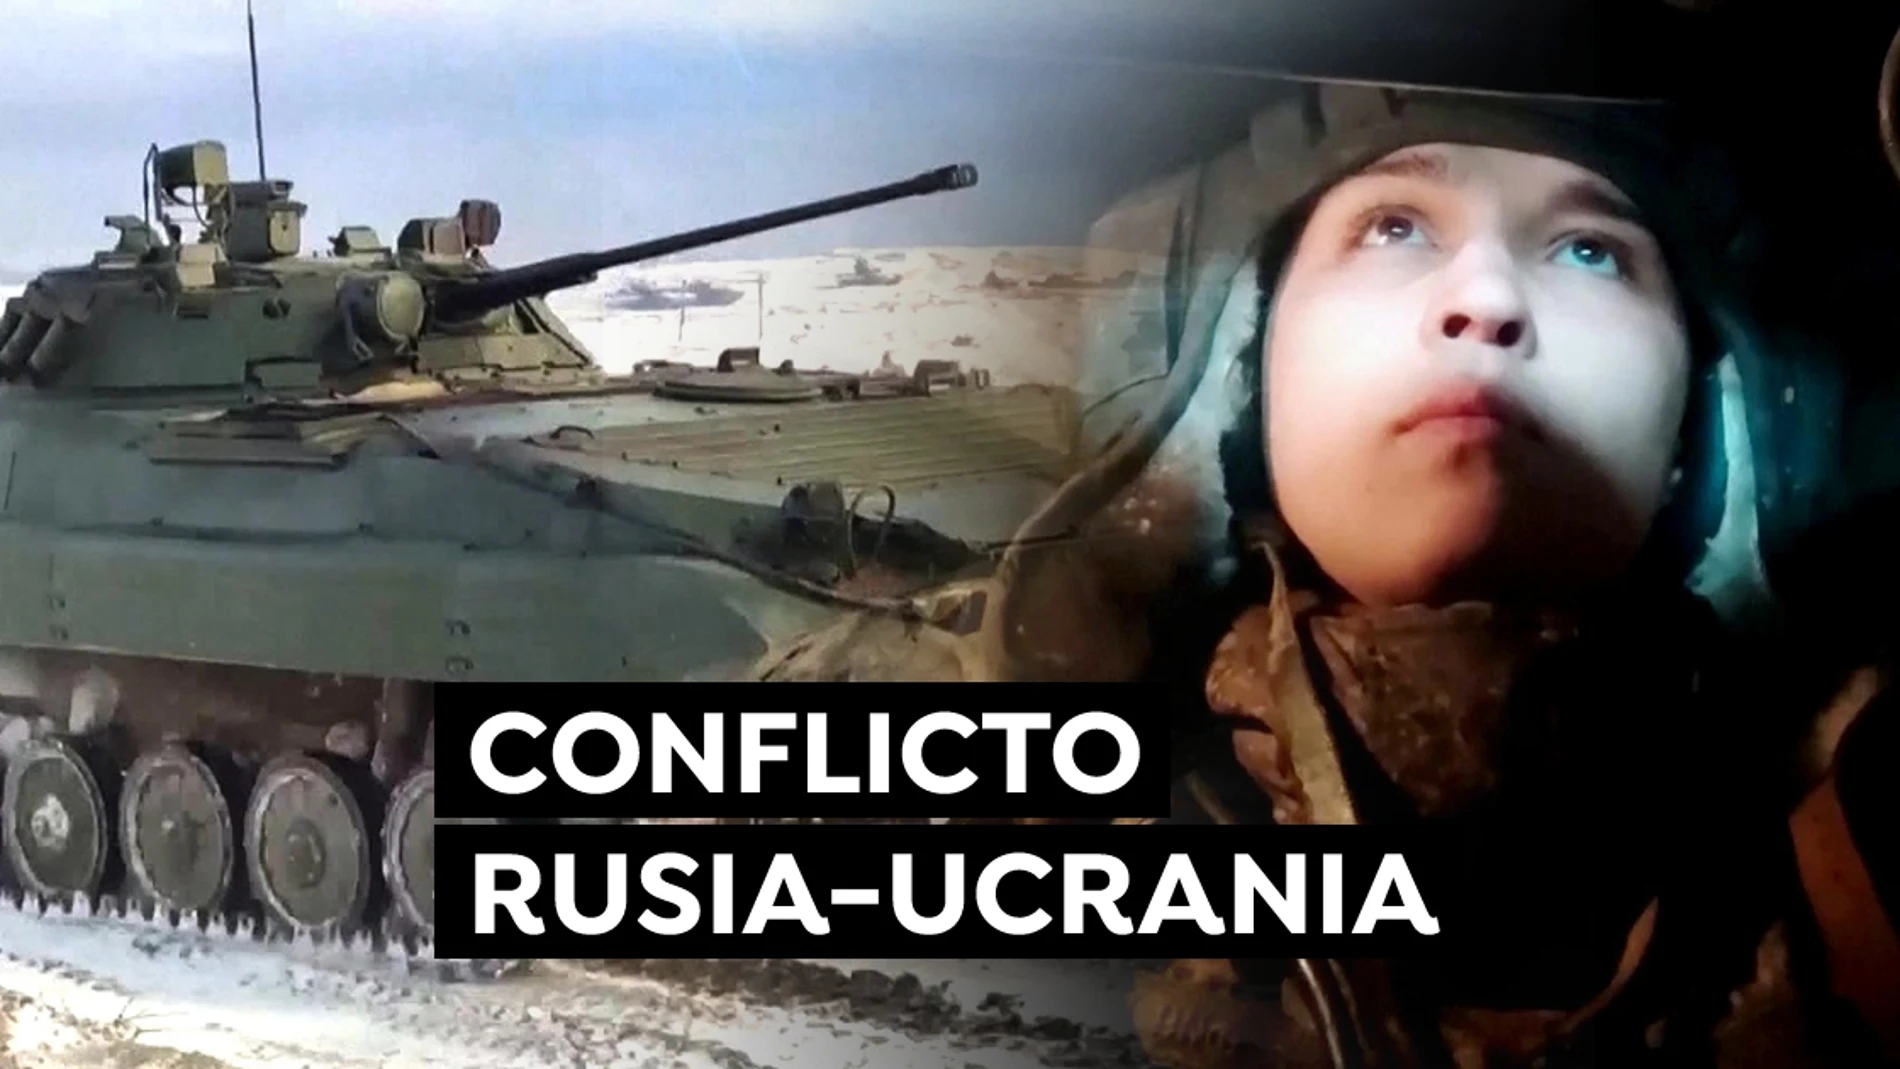 Conflicto Rusia-Ucrania, última hora en directo